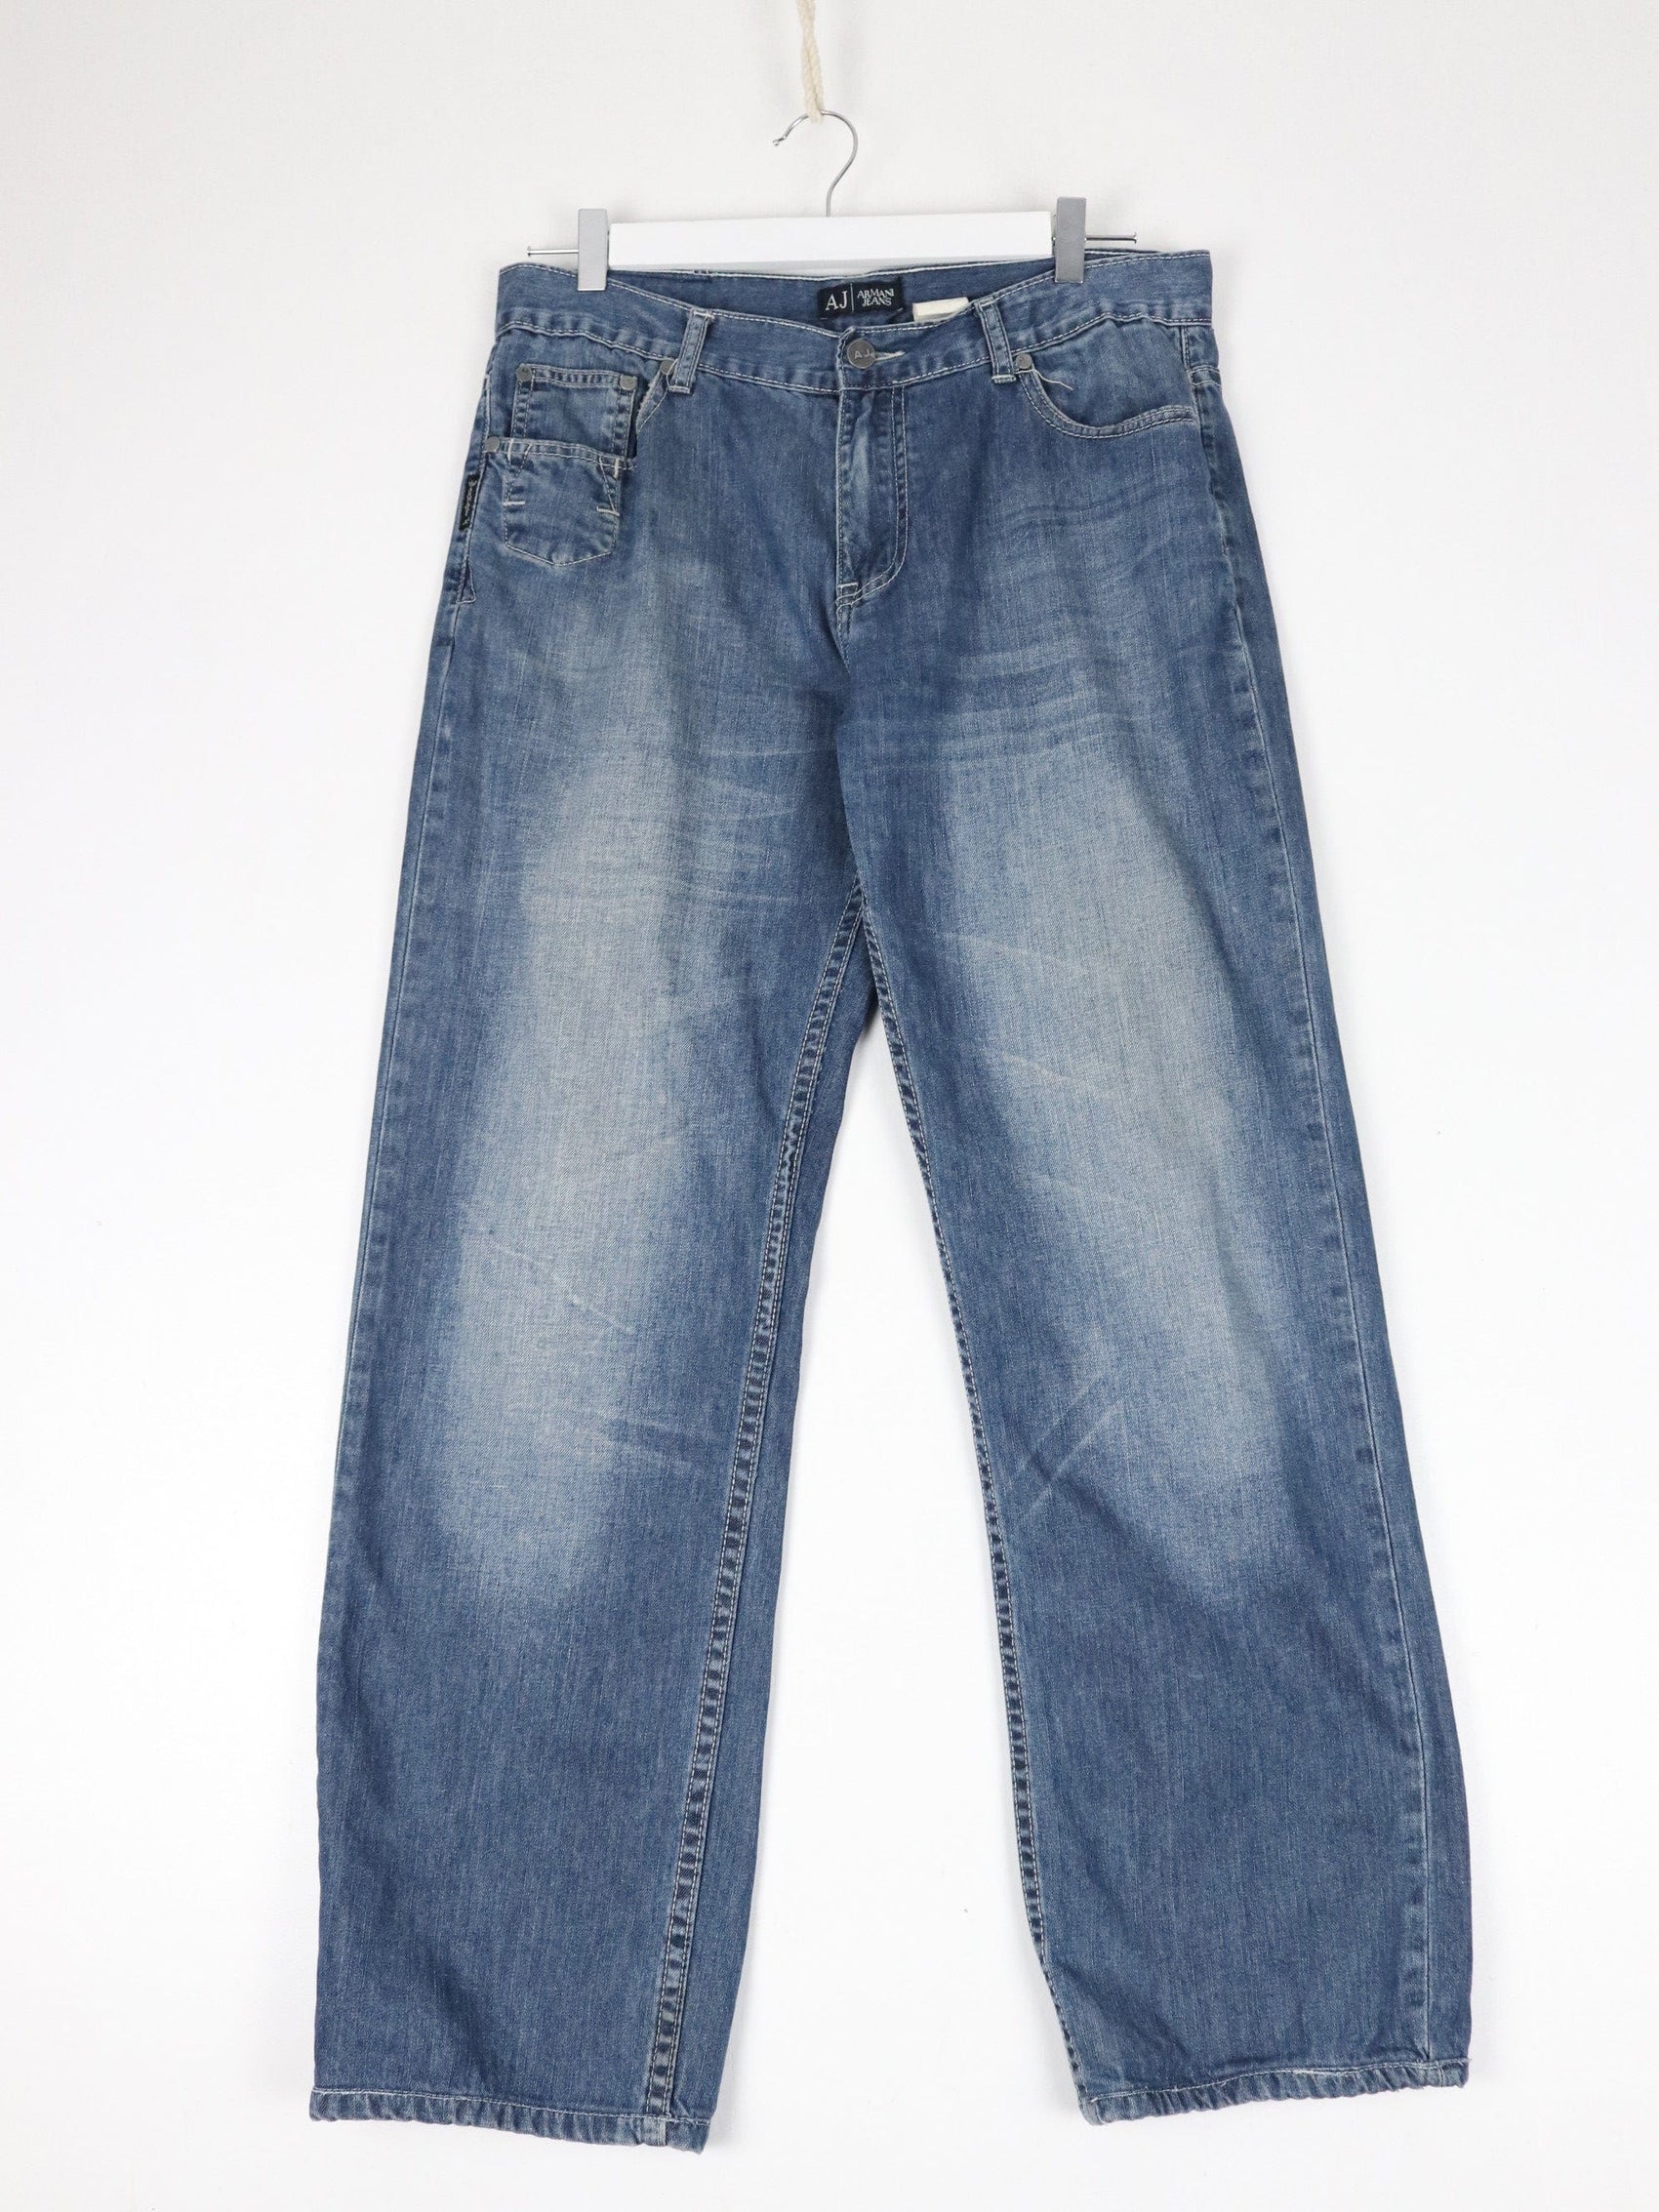 Other Jeans Armani Jeans Pants Fits Mens 33 x 30 Blue Denim